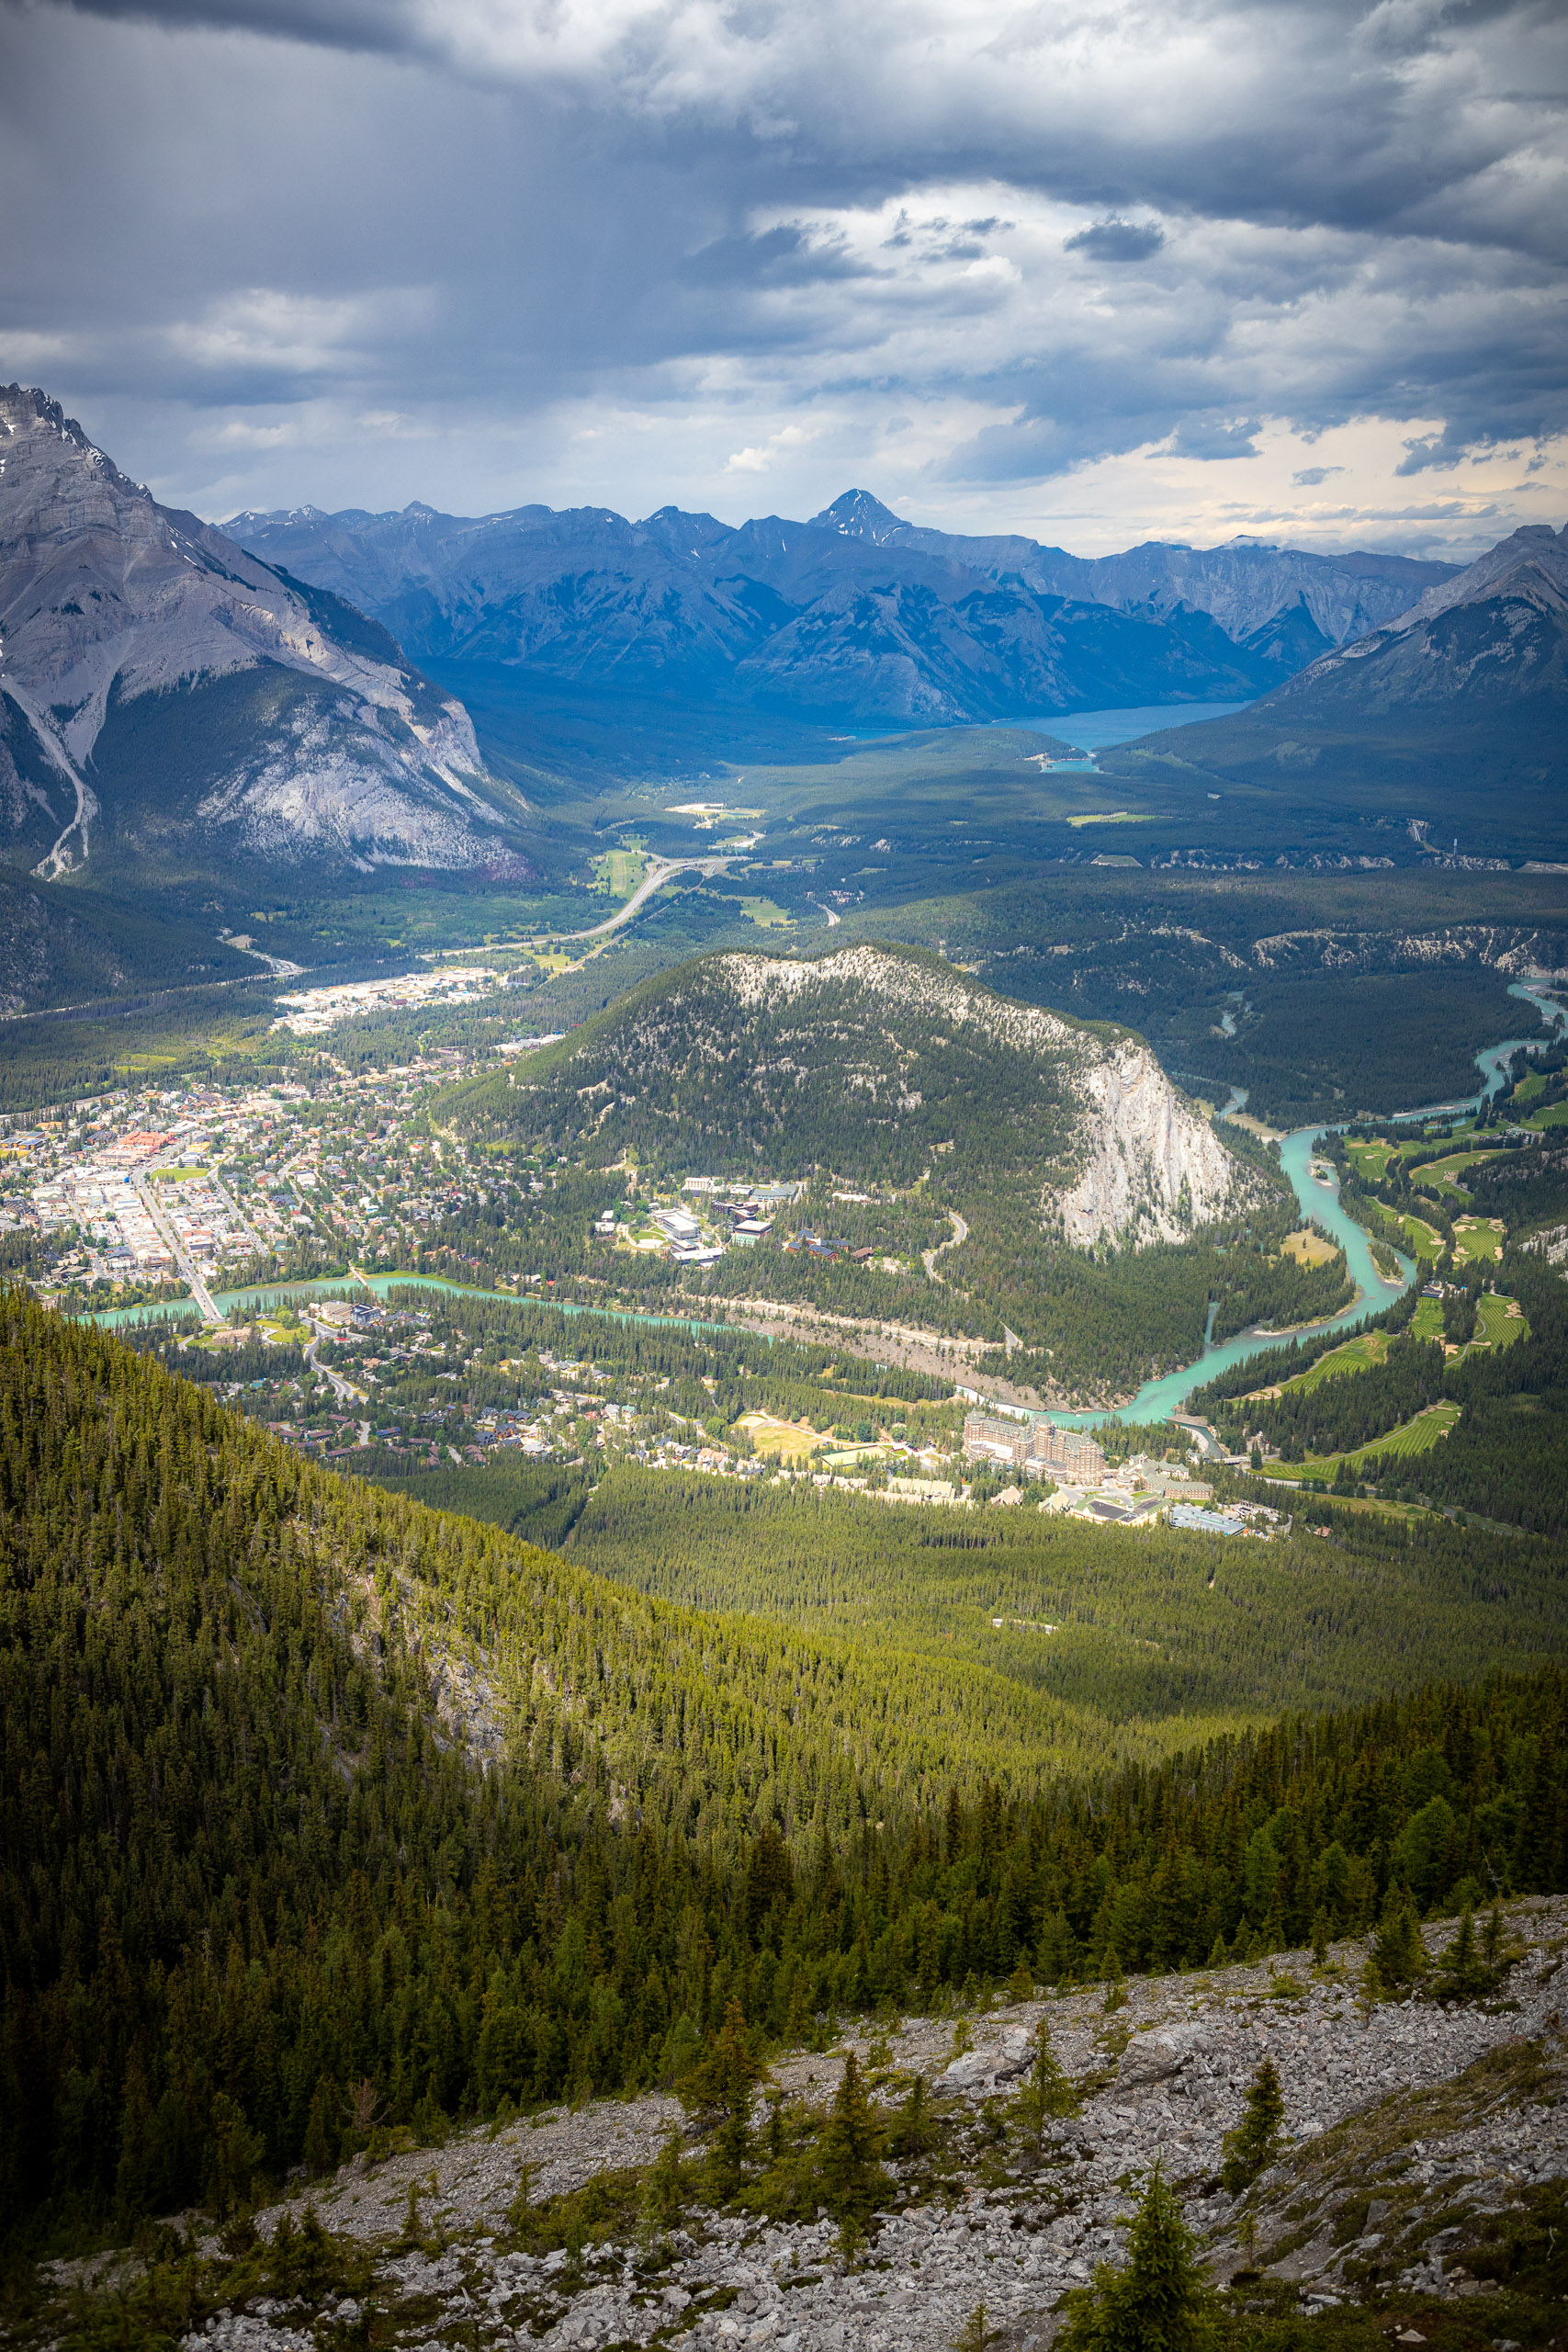 Uitzicht over het dal vanaf de berg Sulphur Mountain in Banff